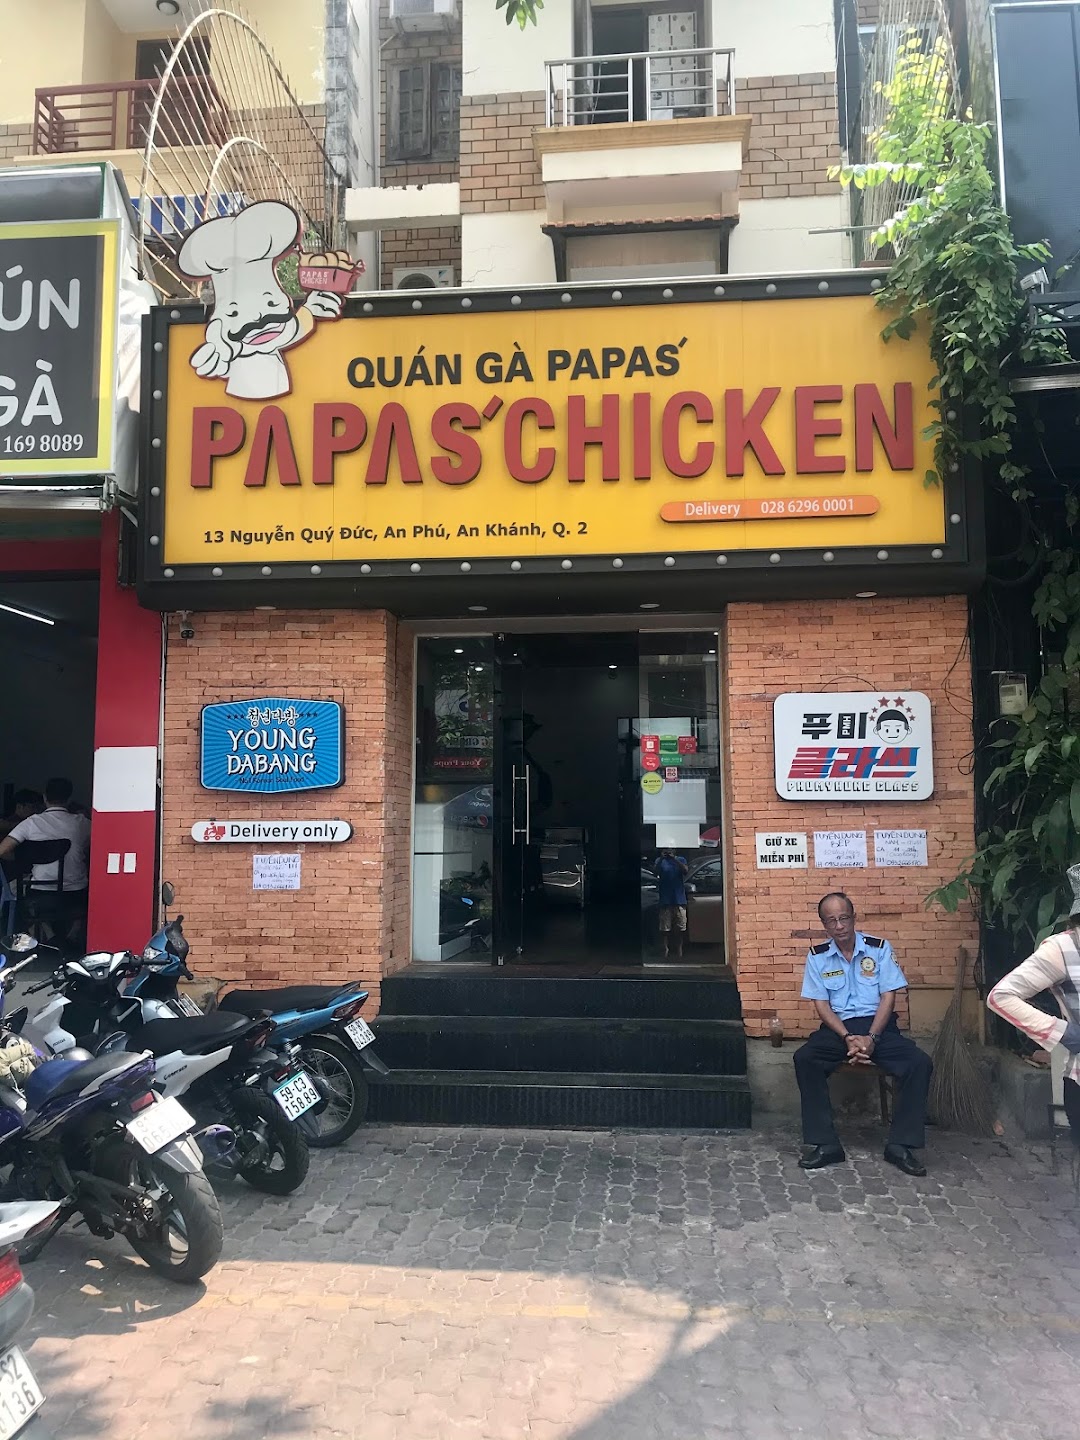 Papas Chicken